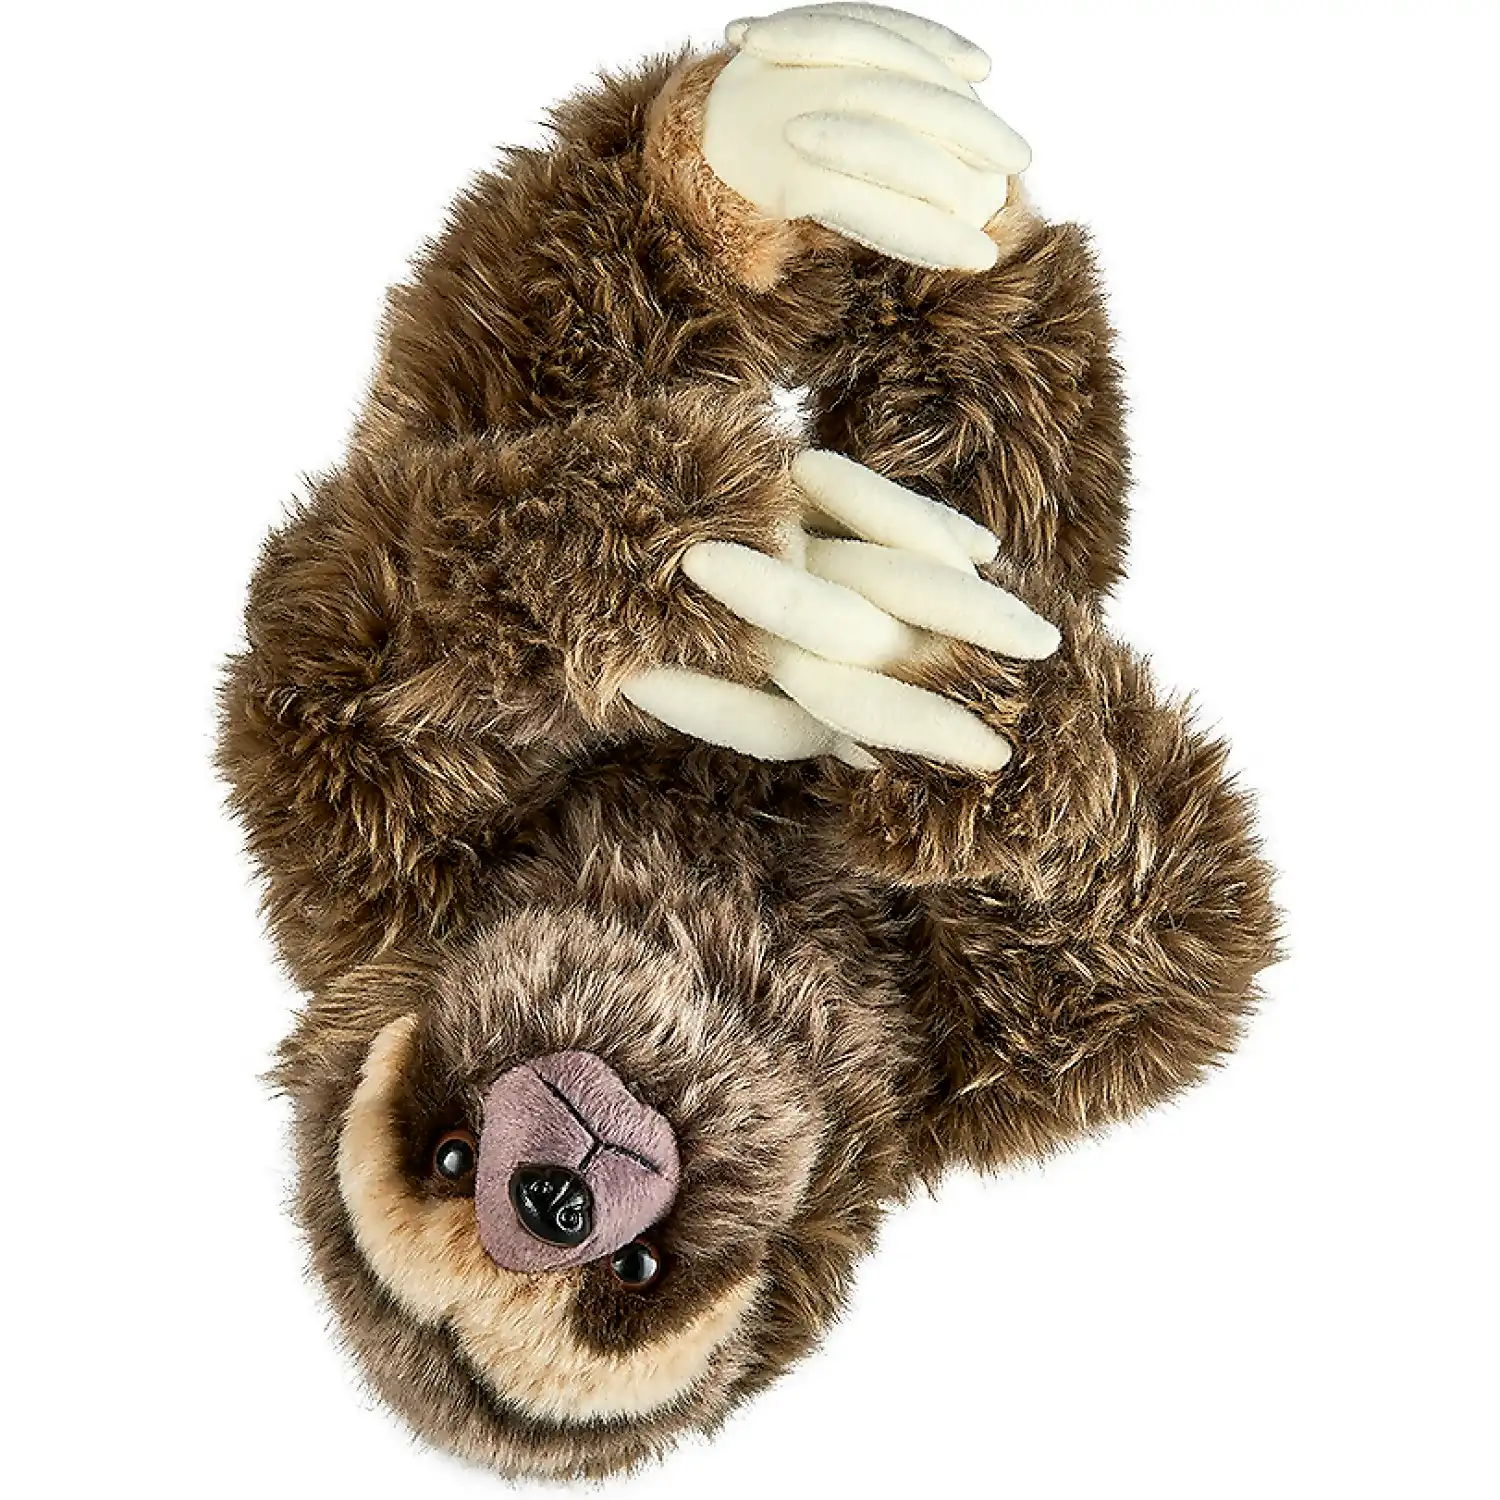 Living Nature - Sloth 22cm Plush